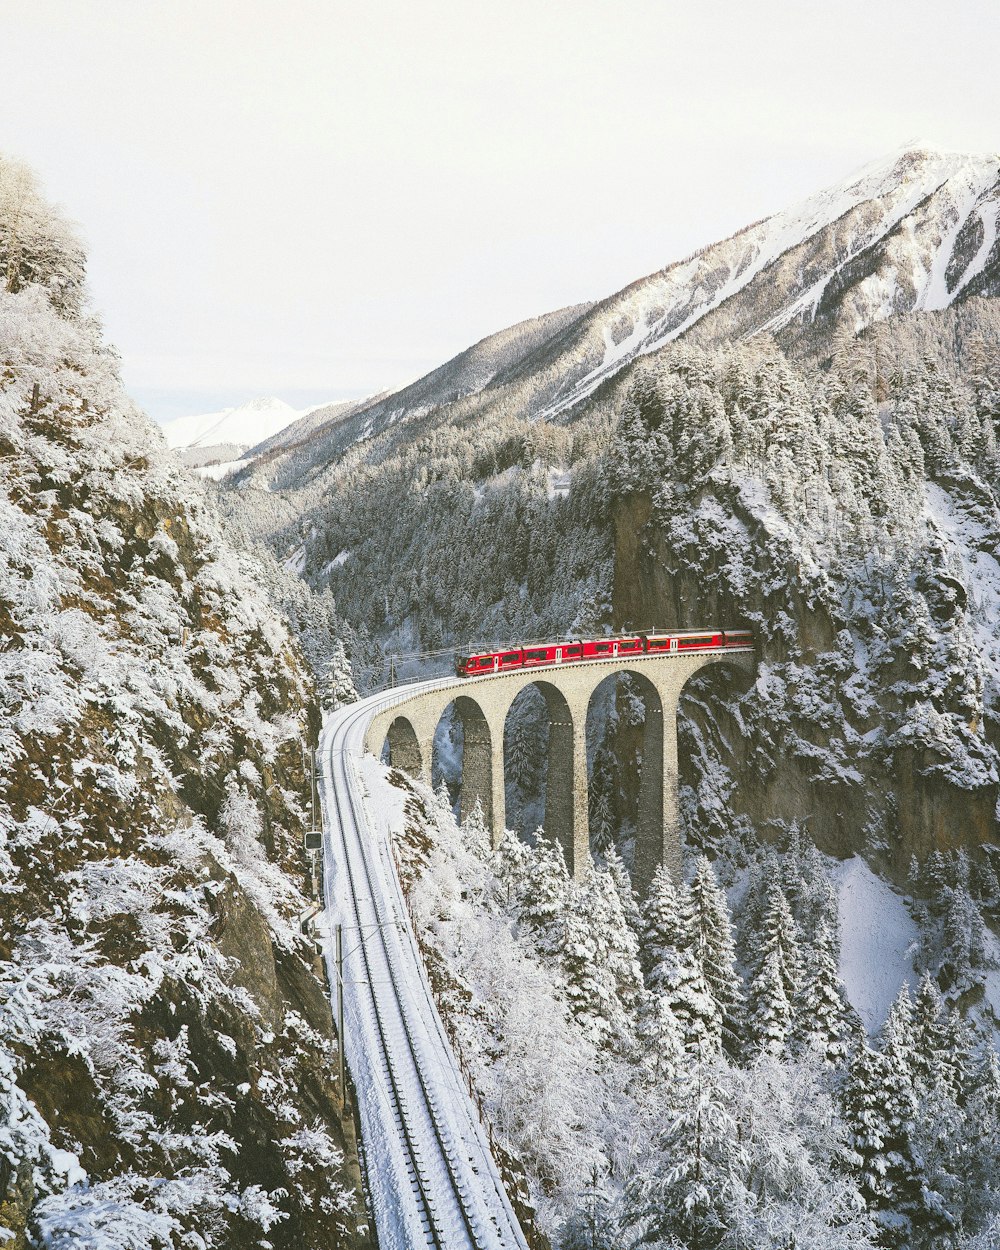 acercándose al tren rojo a través de las montañas